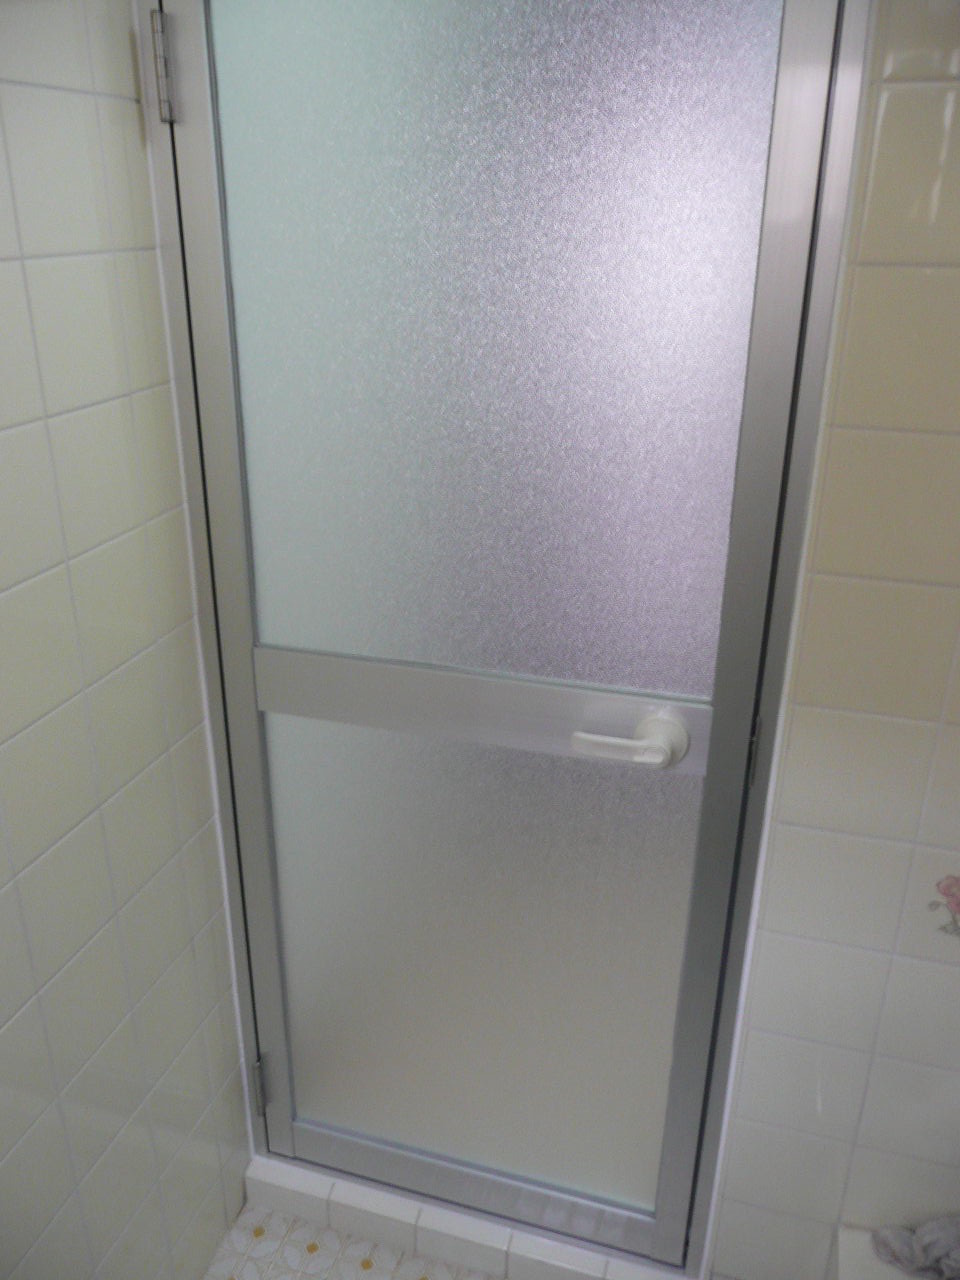 新素材新作 ロンカラー浴室ドア 本体のみ 樹脂パネル付完成品 丁番付 オーダーサイズ 本体幅DW366-865mm 本体高DH507-2048mm  リクシル トステム アルミサッシ